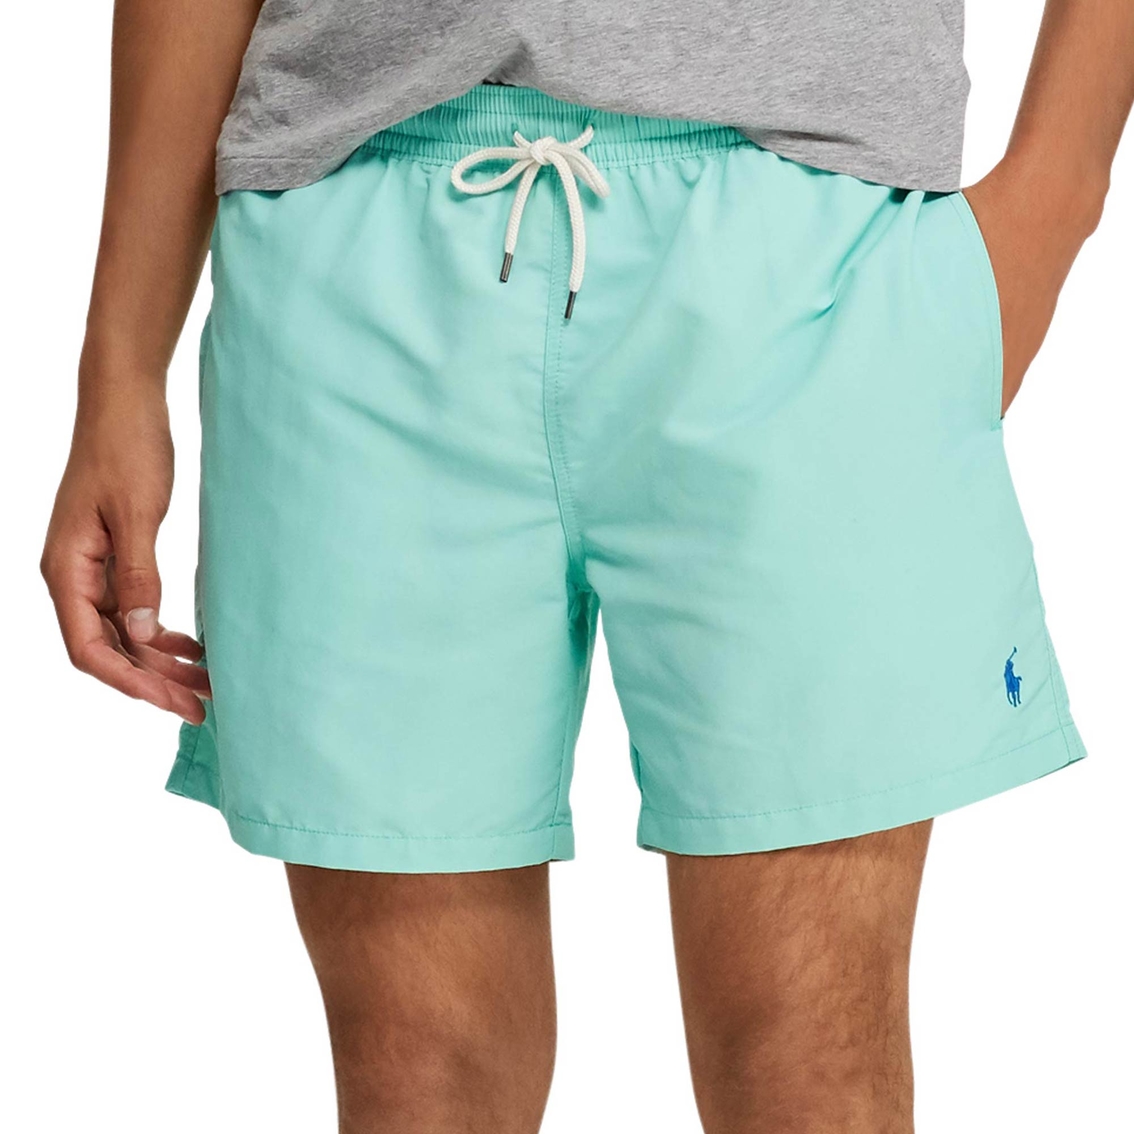 Polo Ralph Lauren 5.75 In. Traveler Swim Trunks | Swimwear | Clothing ...